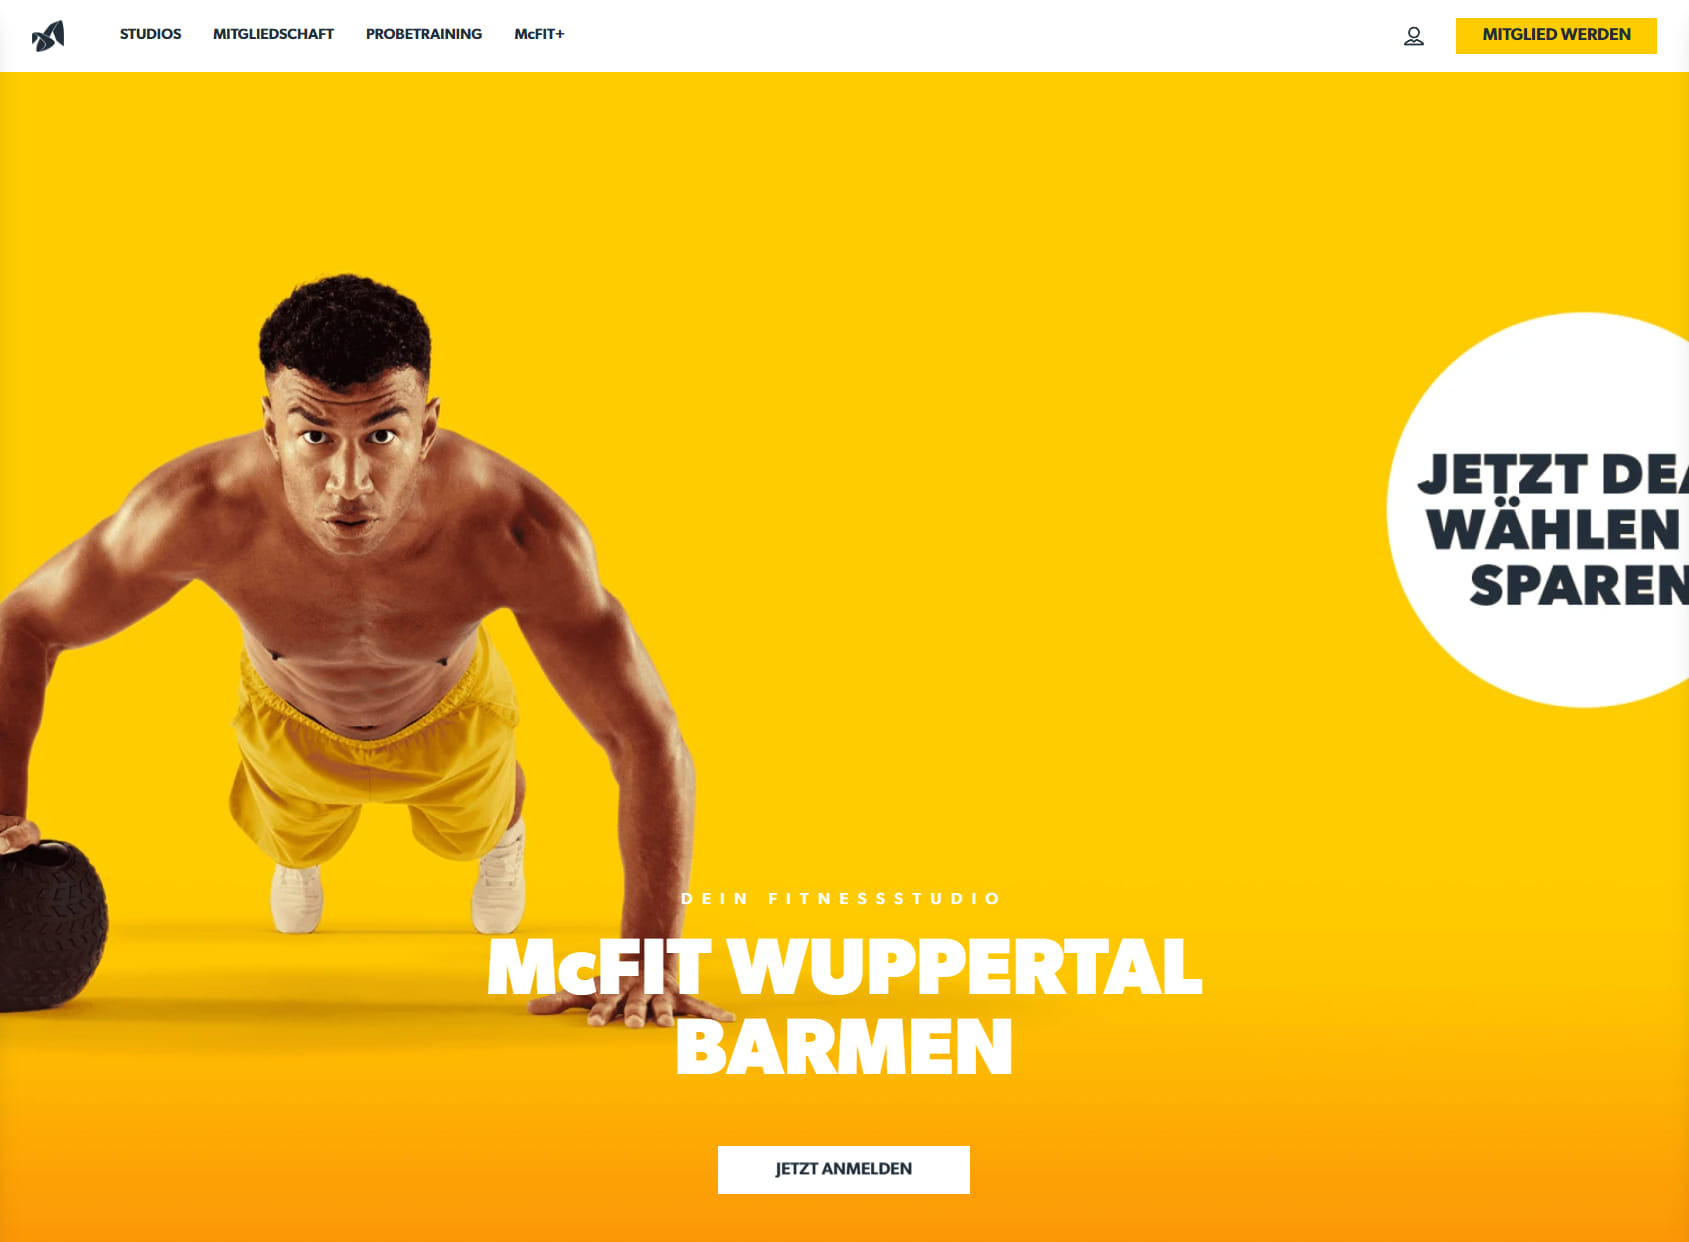 McFit gym Wuppertal Barmen